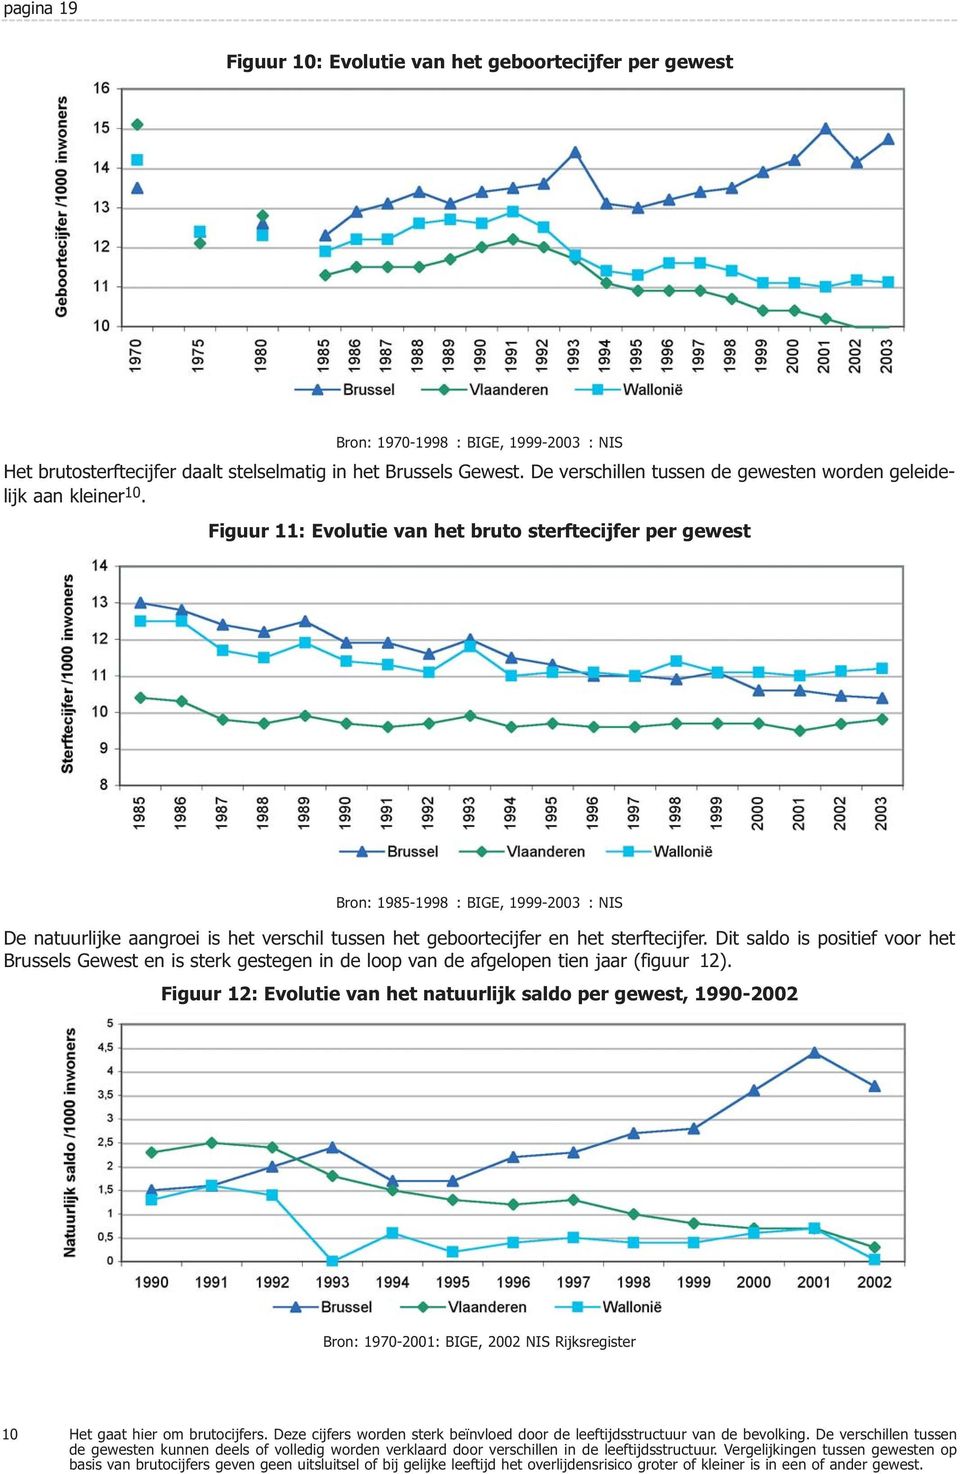 Figuur 11: Evolutie van het bruto sterftecijfer per gewest Bron: 1985-1998 : BIGE, 1999-2003 : NIS De natuurlijke aangroei is het verschil tussen het geboortecijfer en het sterftecijfer.